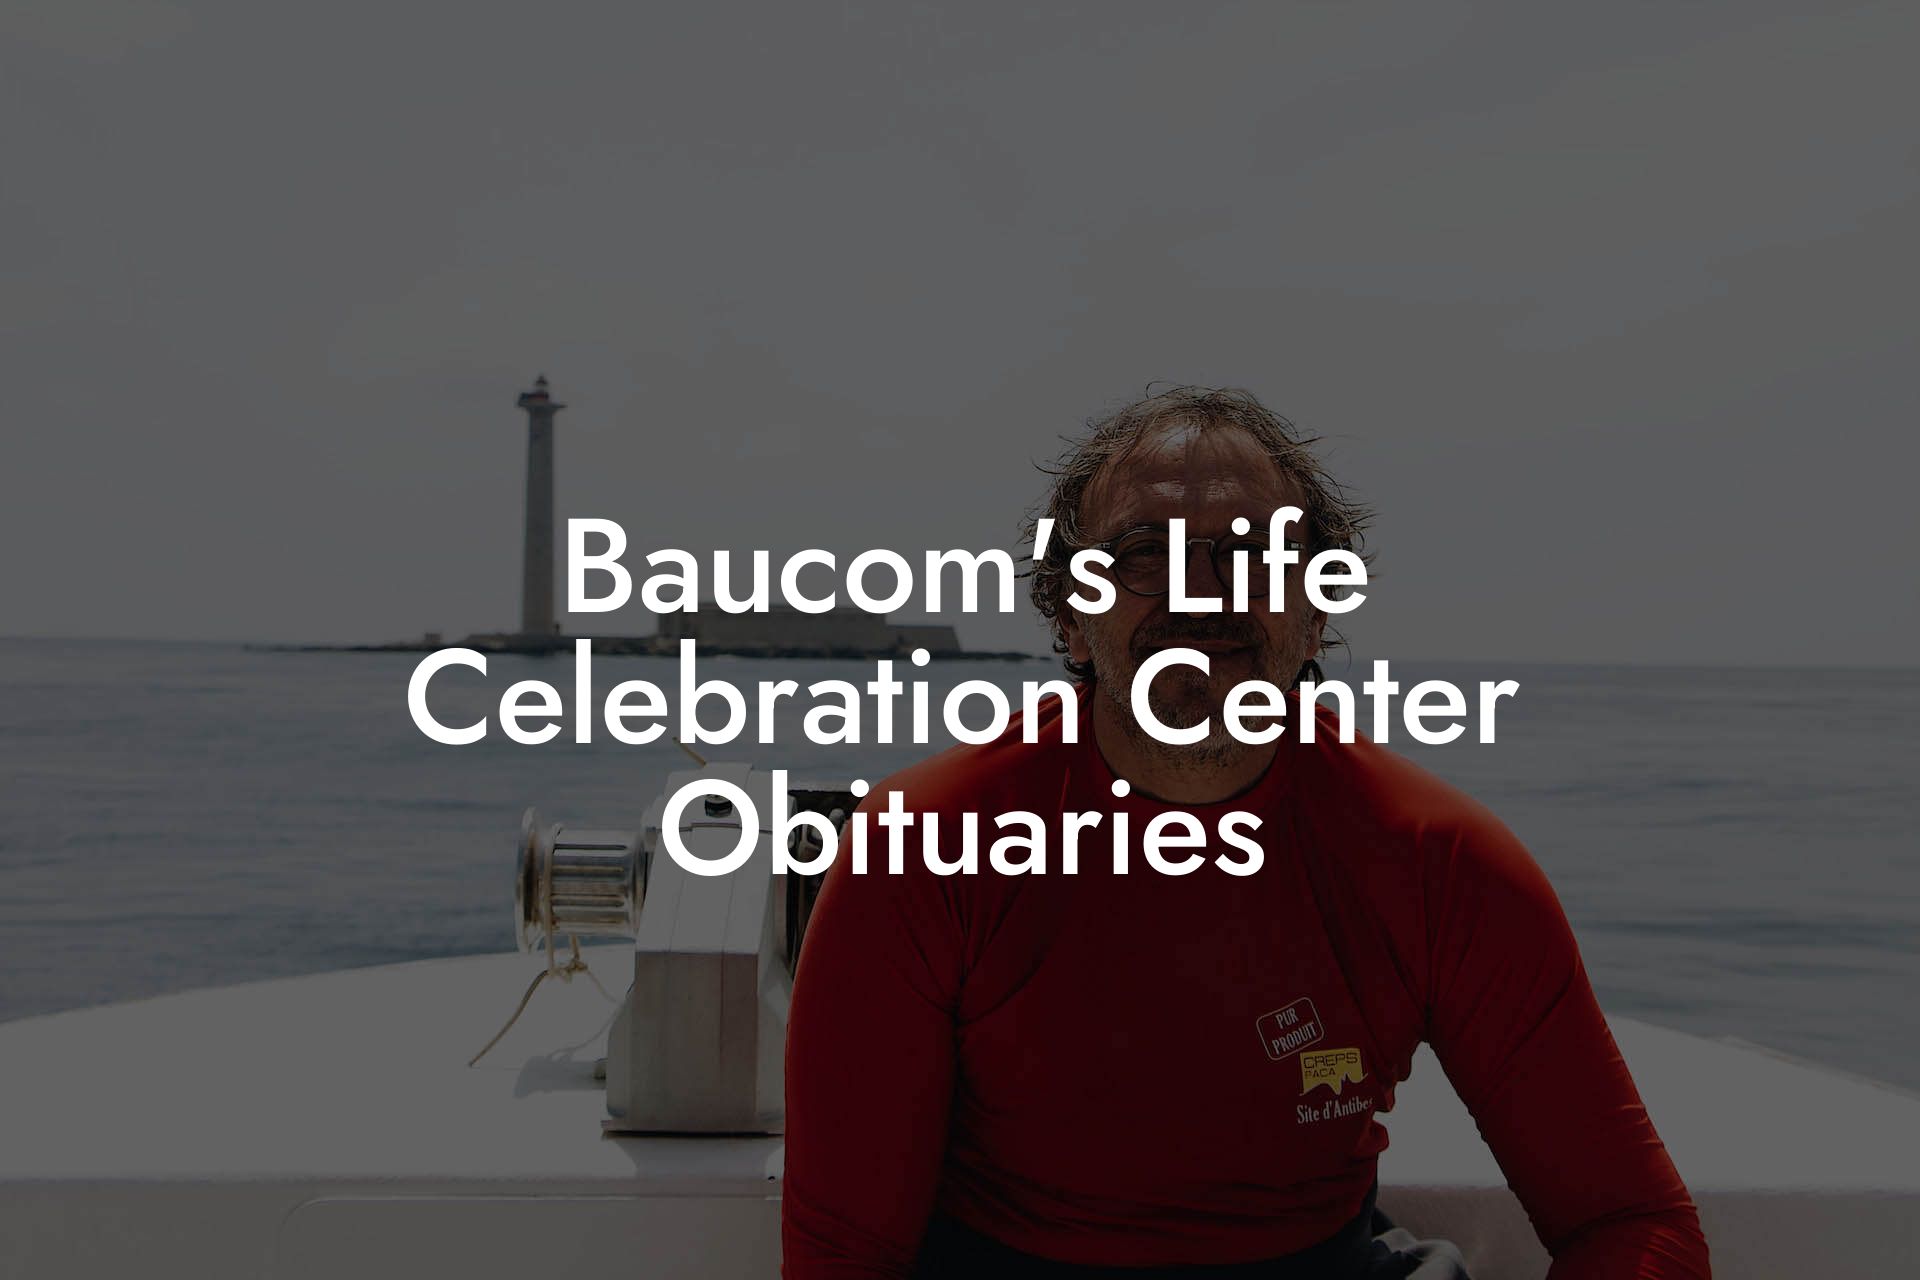 Baucom's Life Celebration Center Obituaries